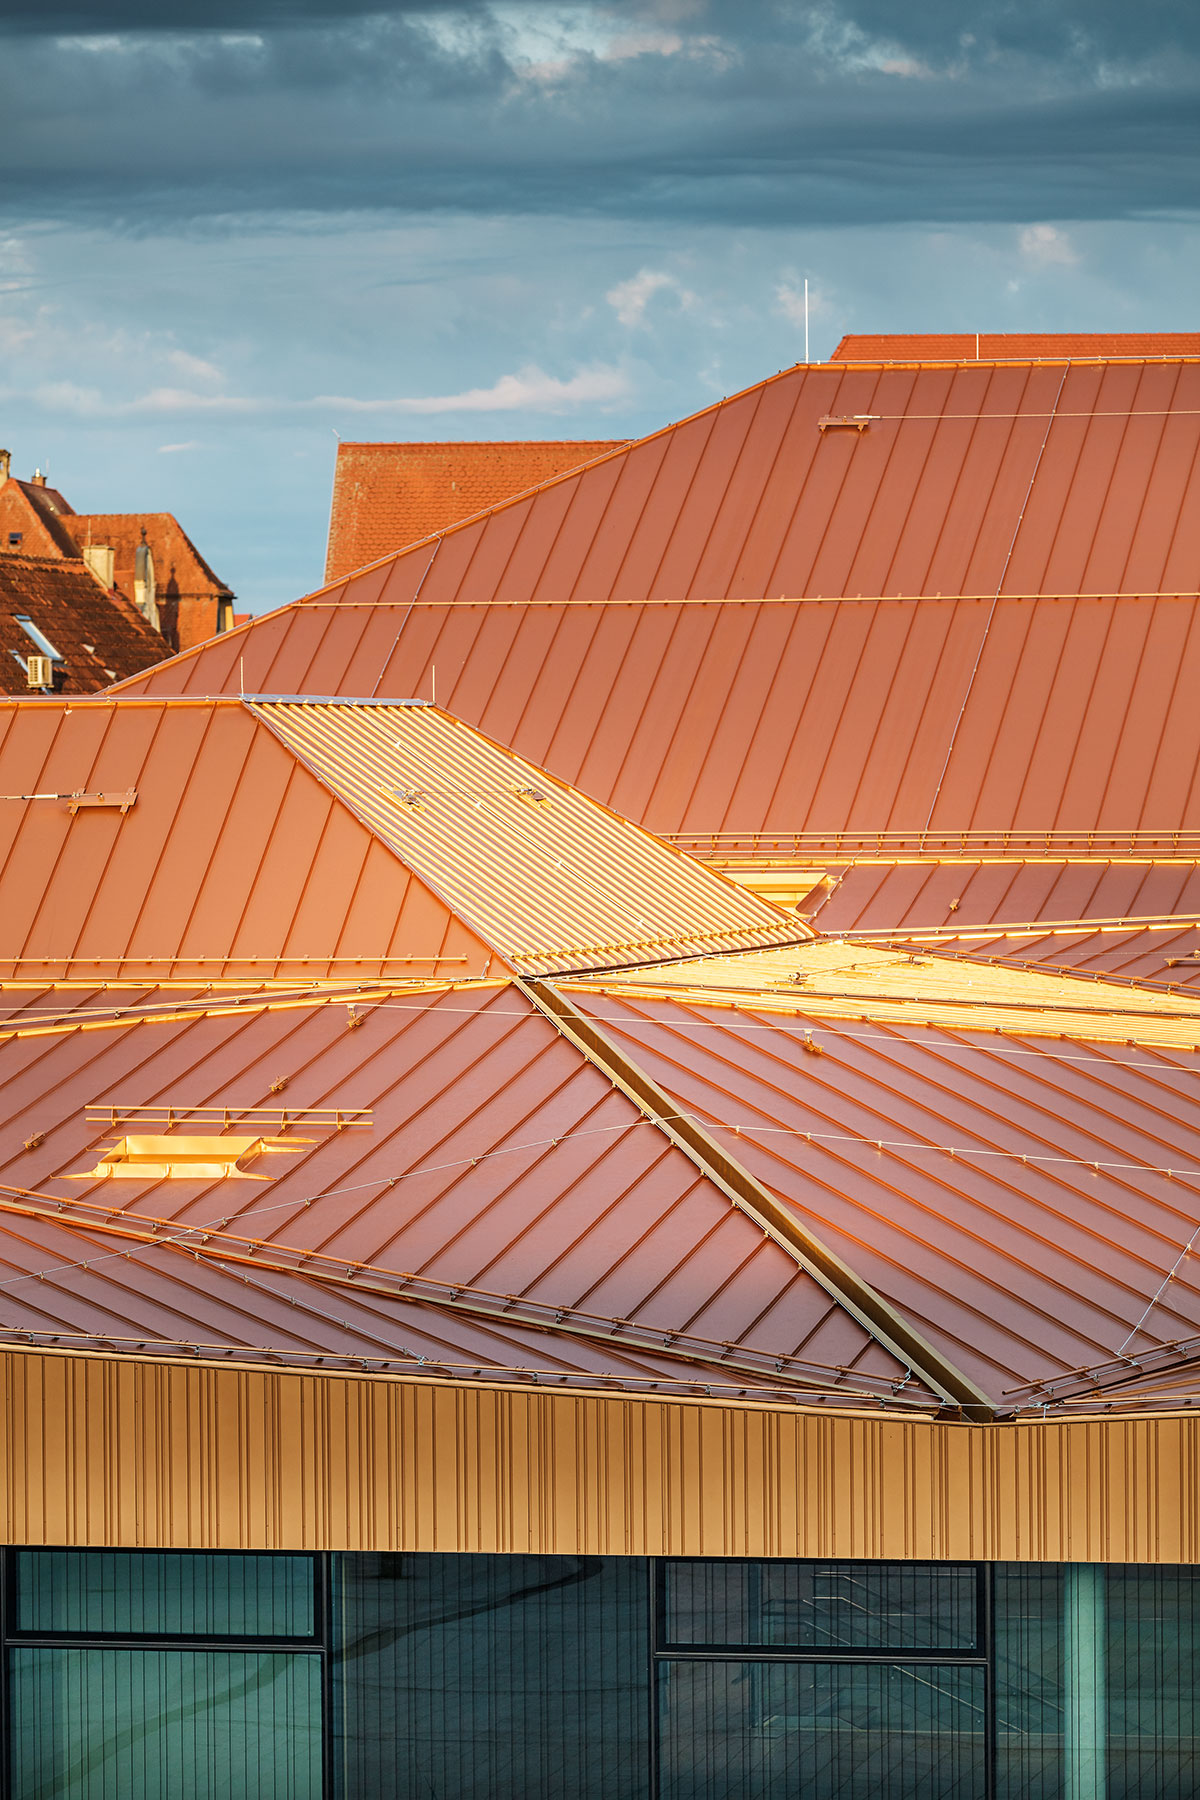 Architekti se nebáli zlaté barvy střechy.